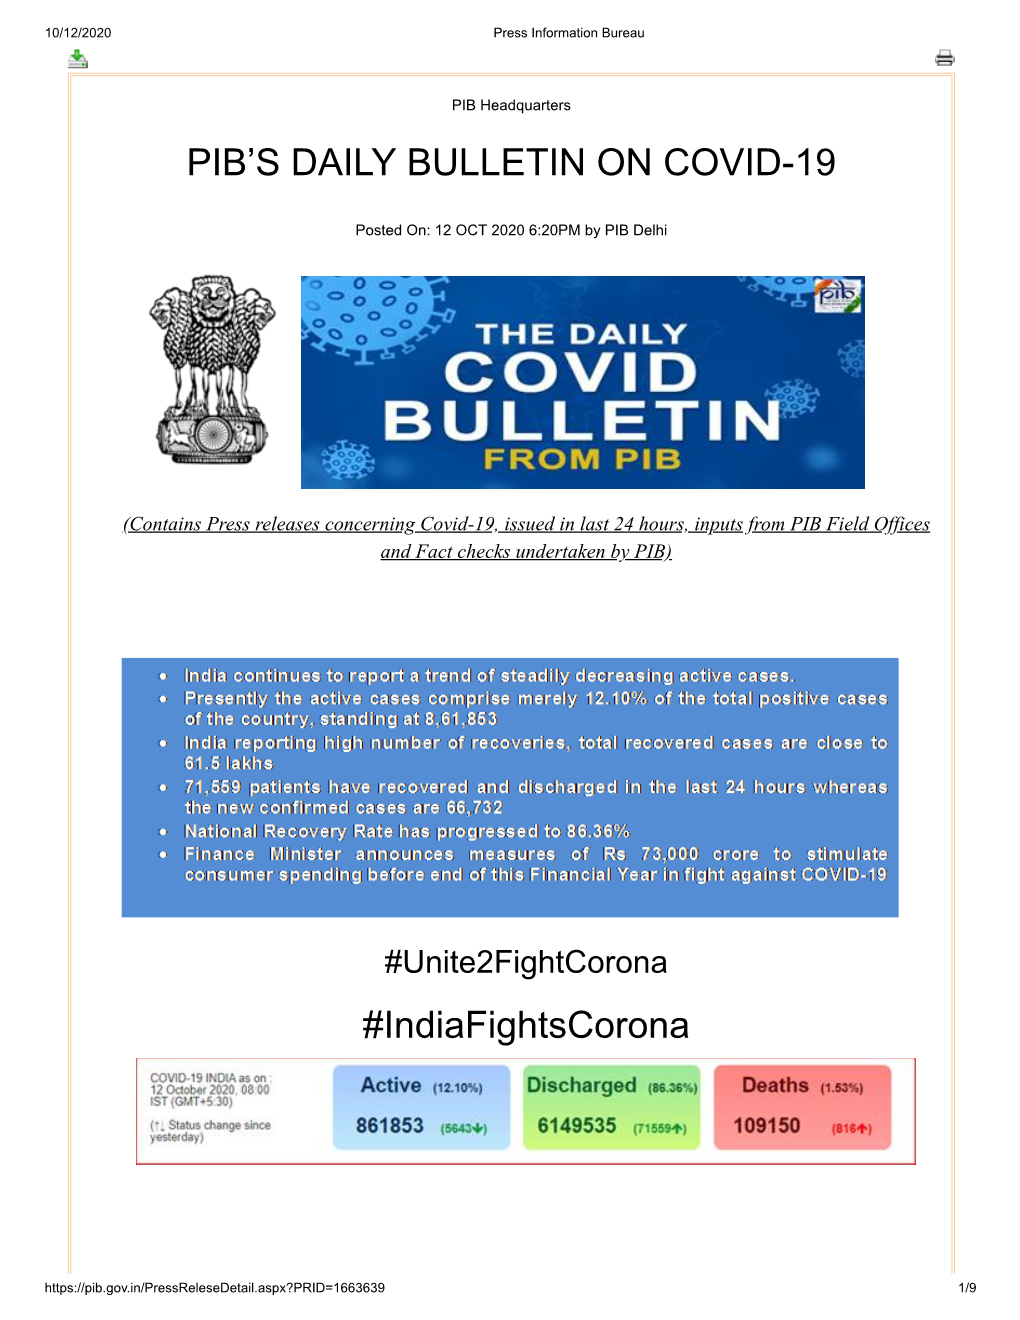 PIB's DAILY BULLETIN on COVID-19 #Indiafightscorona